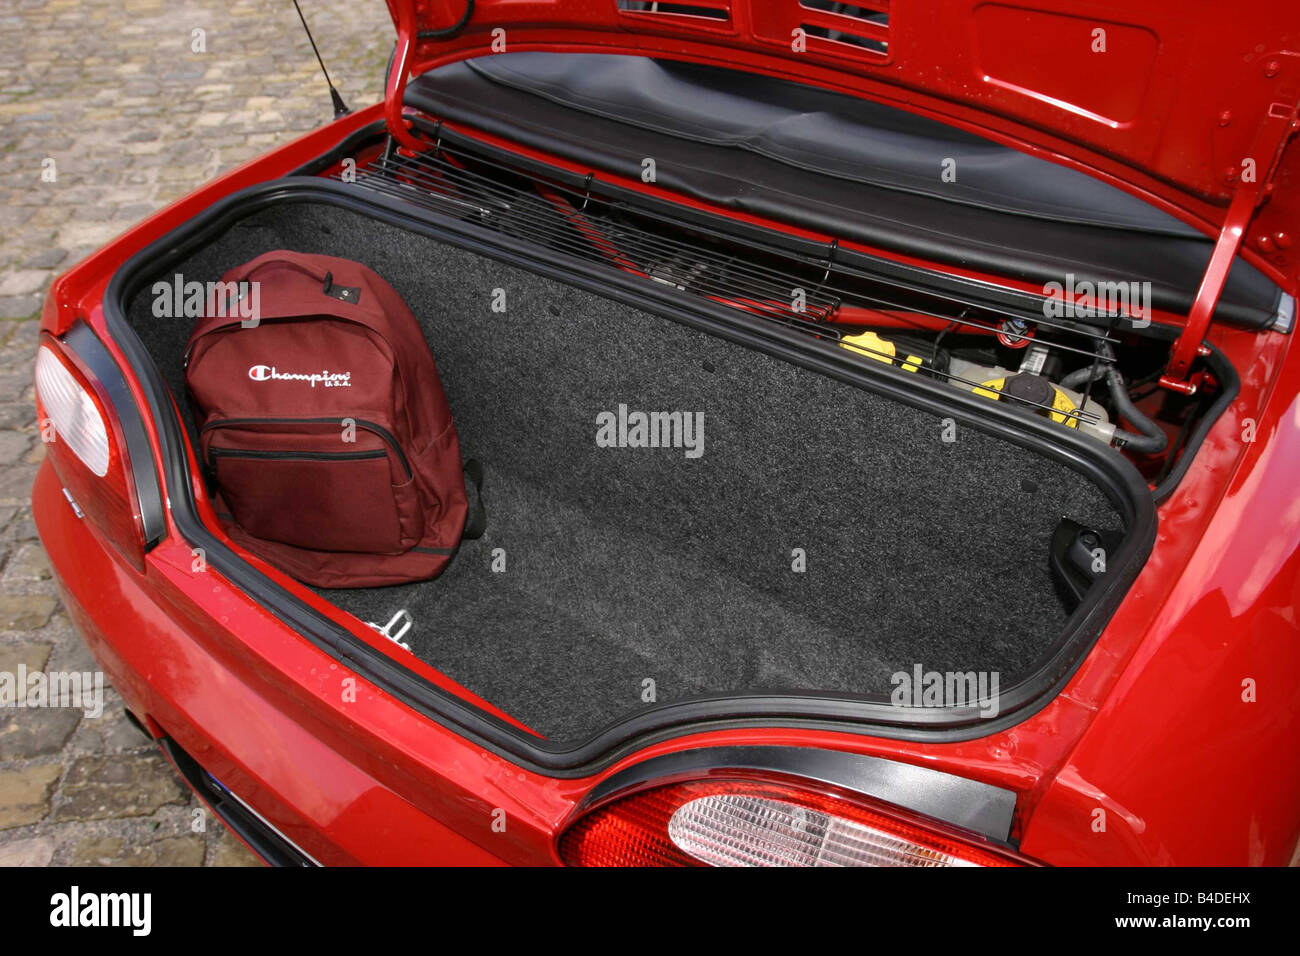 Coche, MG MGTF, convertible, modelo del año 2002-, rojo, ver en el maletero, técnica/accesorios, accesorios Foto de stock